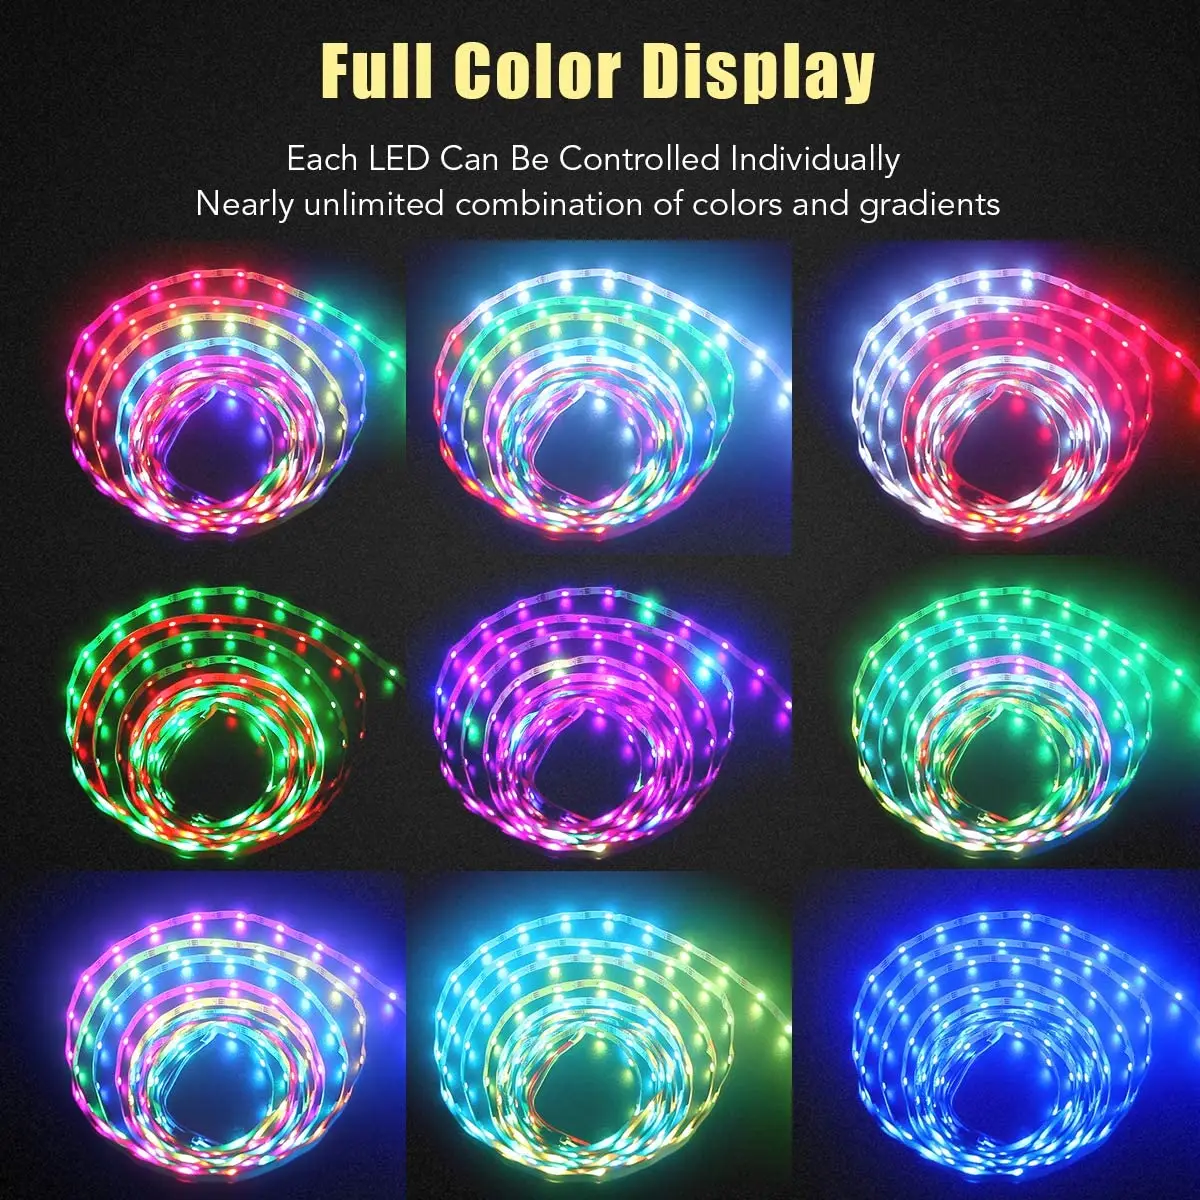 LED Strip WS2812 RGB LED 16.4 ft 300LEDs Drøm Farve Rainbow LED Bånd Lys, 5V DC Hvid PCB, Lysstyrke 5 Meter Ikke Vandtæt